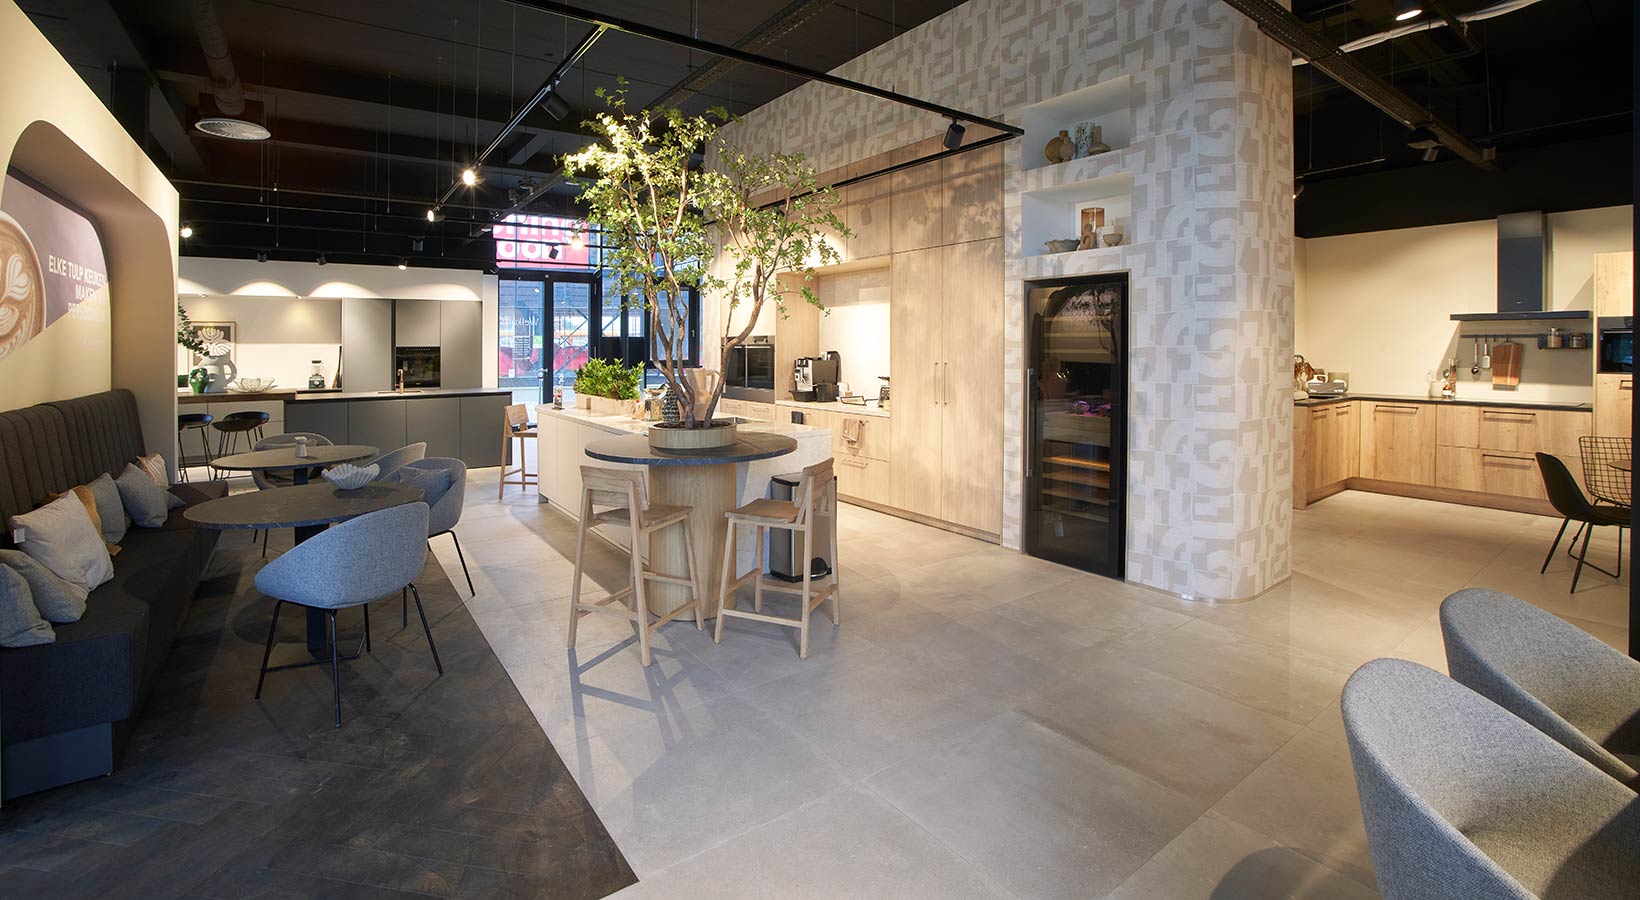 Ontdek de laatste trends in keukens in deze nieuwe showroom, waar alle keukeninspiratie op je wacht